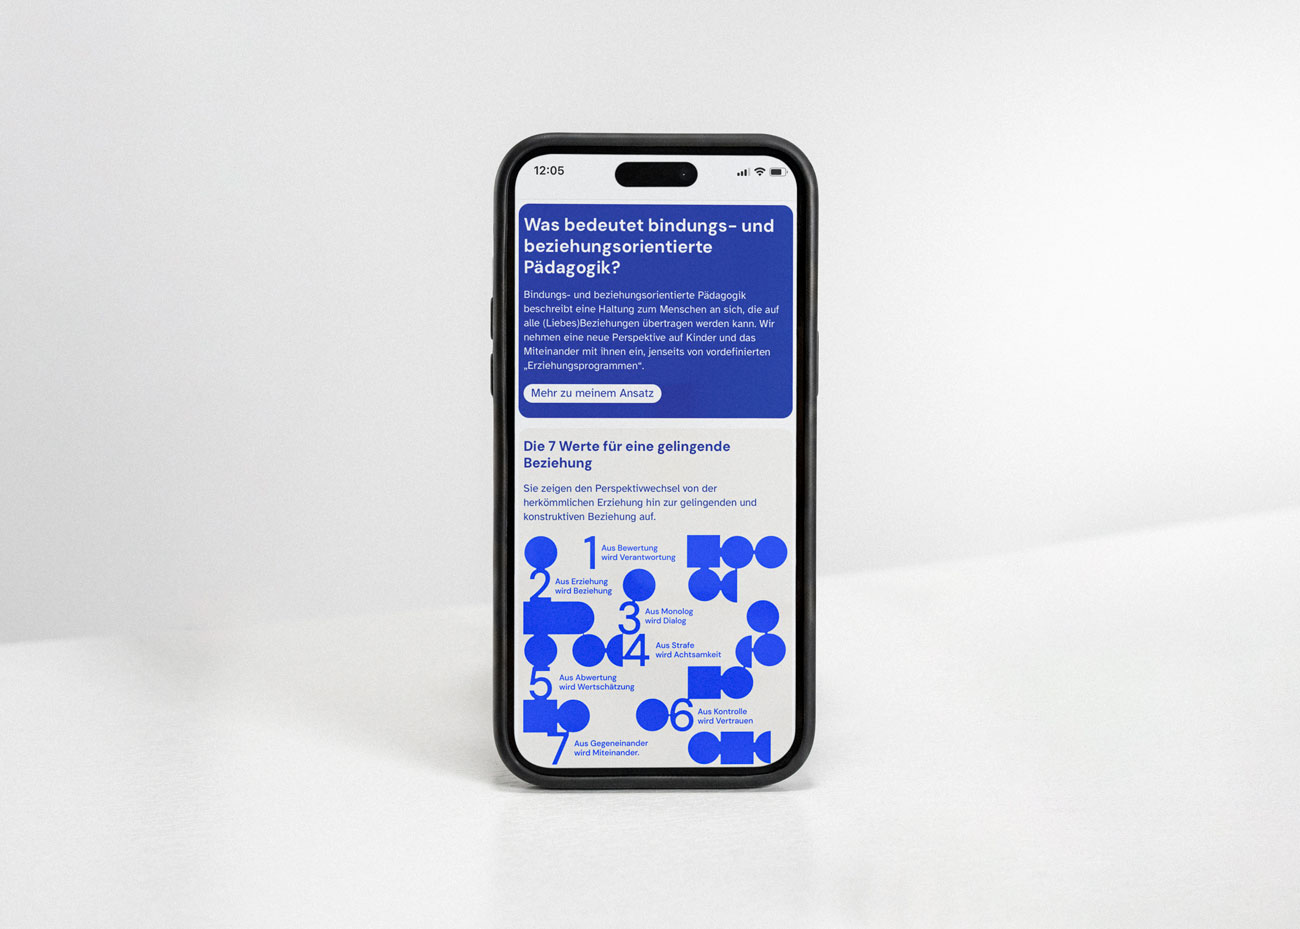 Ein Smartphone steht hochkant vor weißem Grund. Text in weißer Schrift auf dunklem blau ist erkennbar sowie eine blaue Grafik auf hellem Grund.